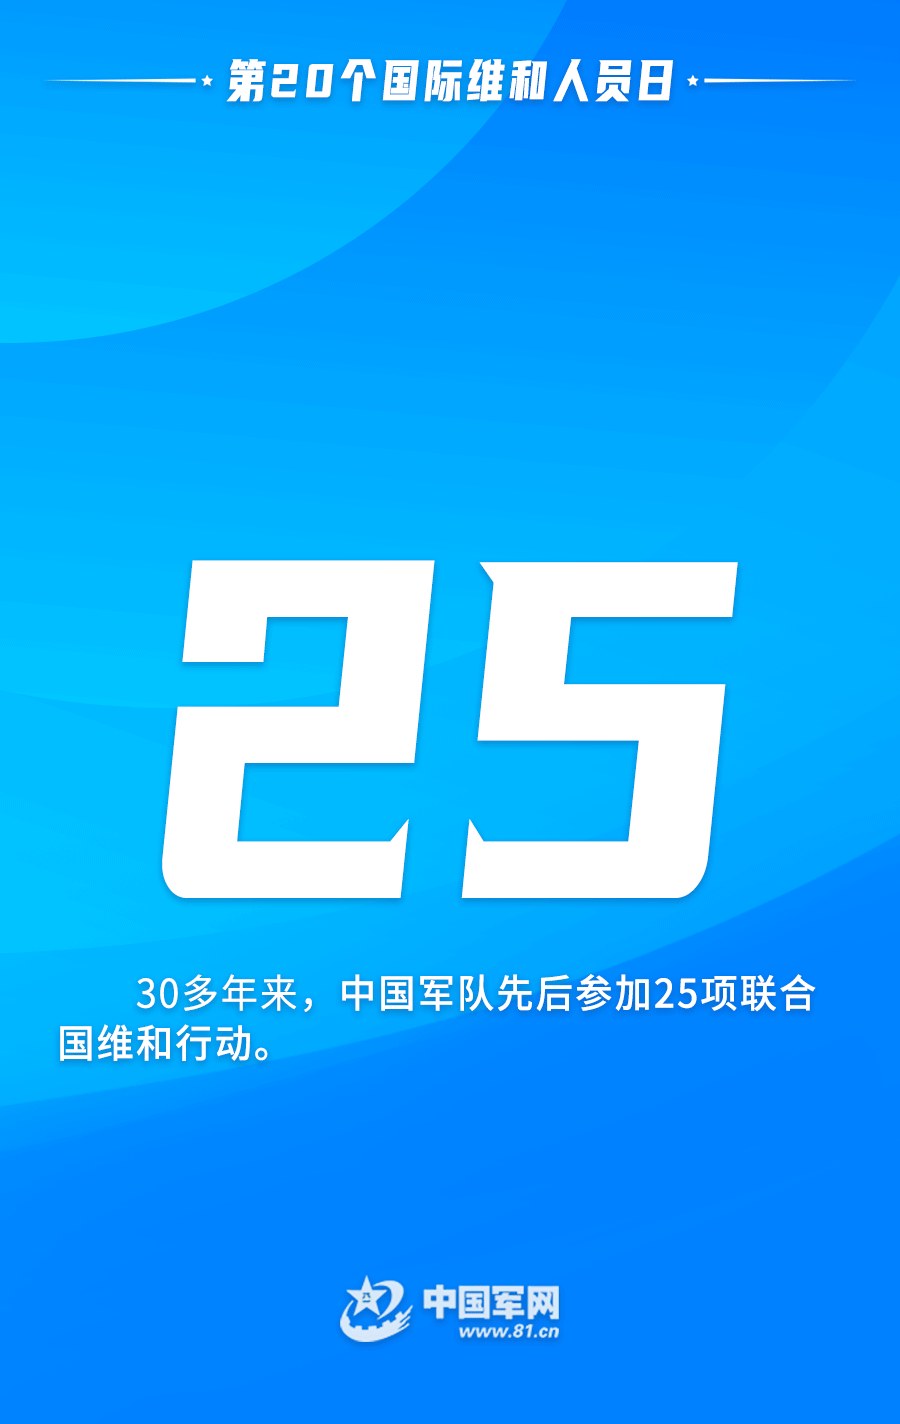 中国“蓝盔”丨今天，用一组数字动态海报向他们致敬阿斯顿英语双减政策